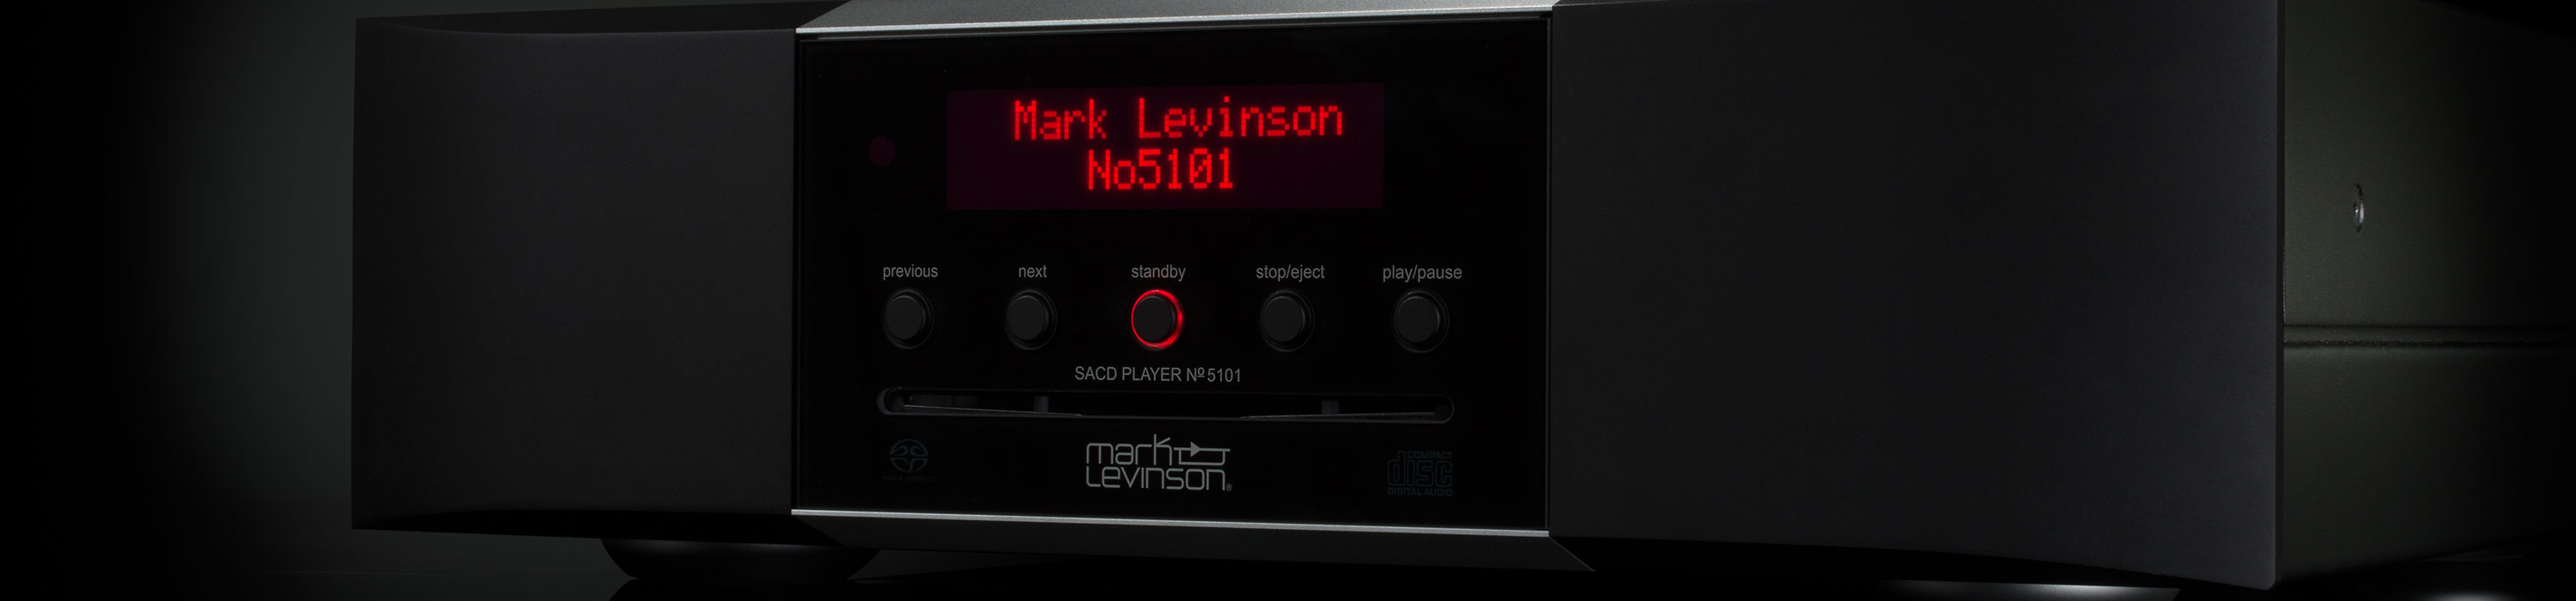 Mark Levinson  No 5101